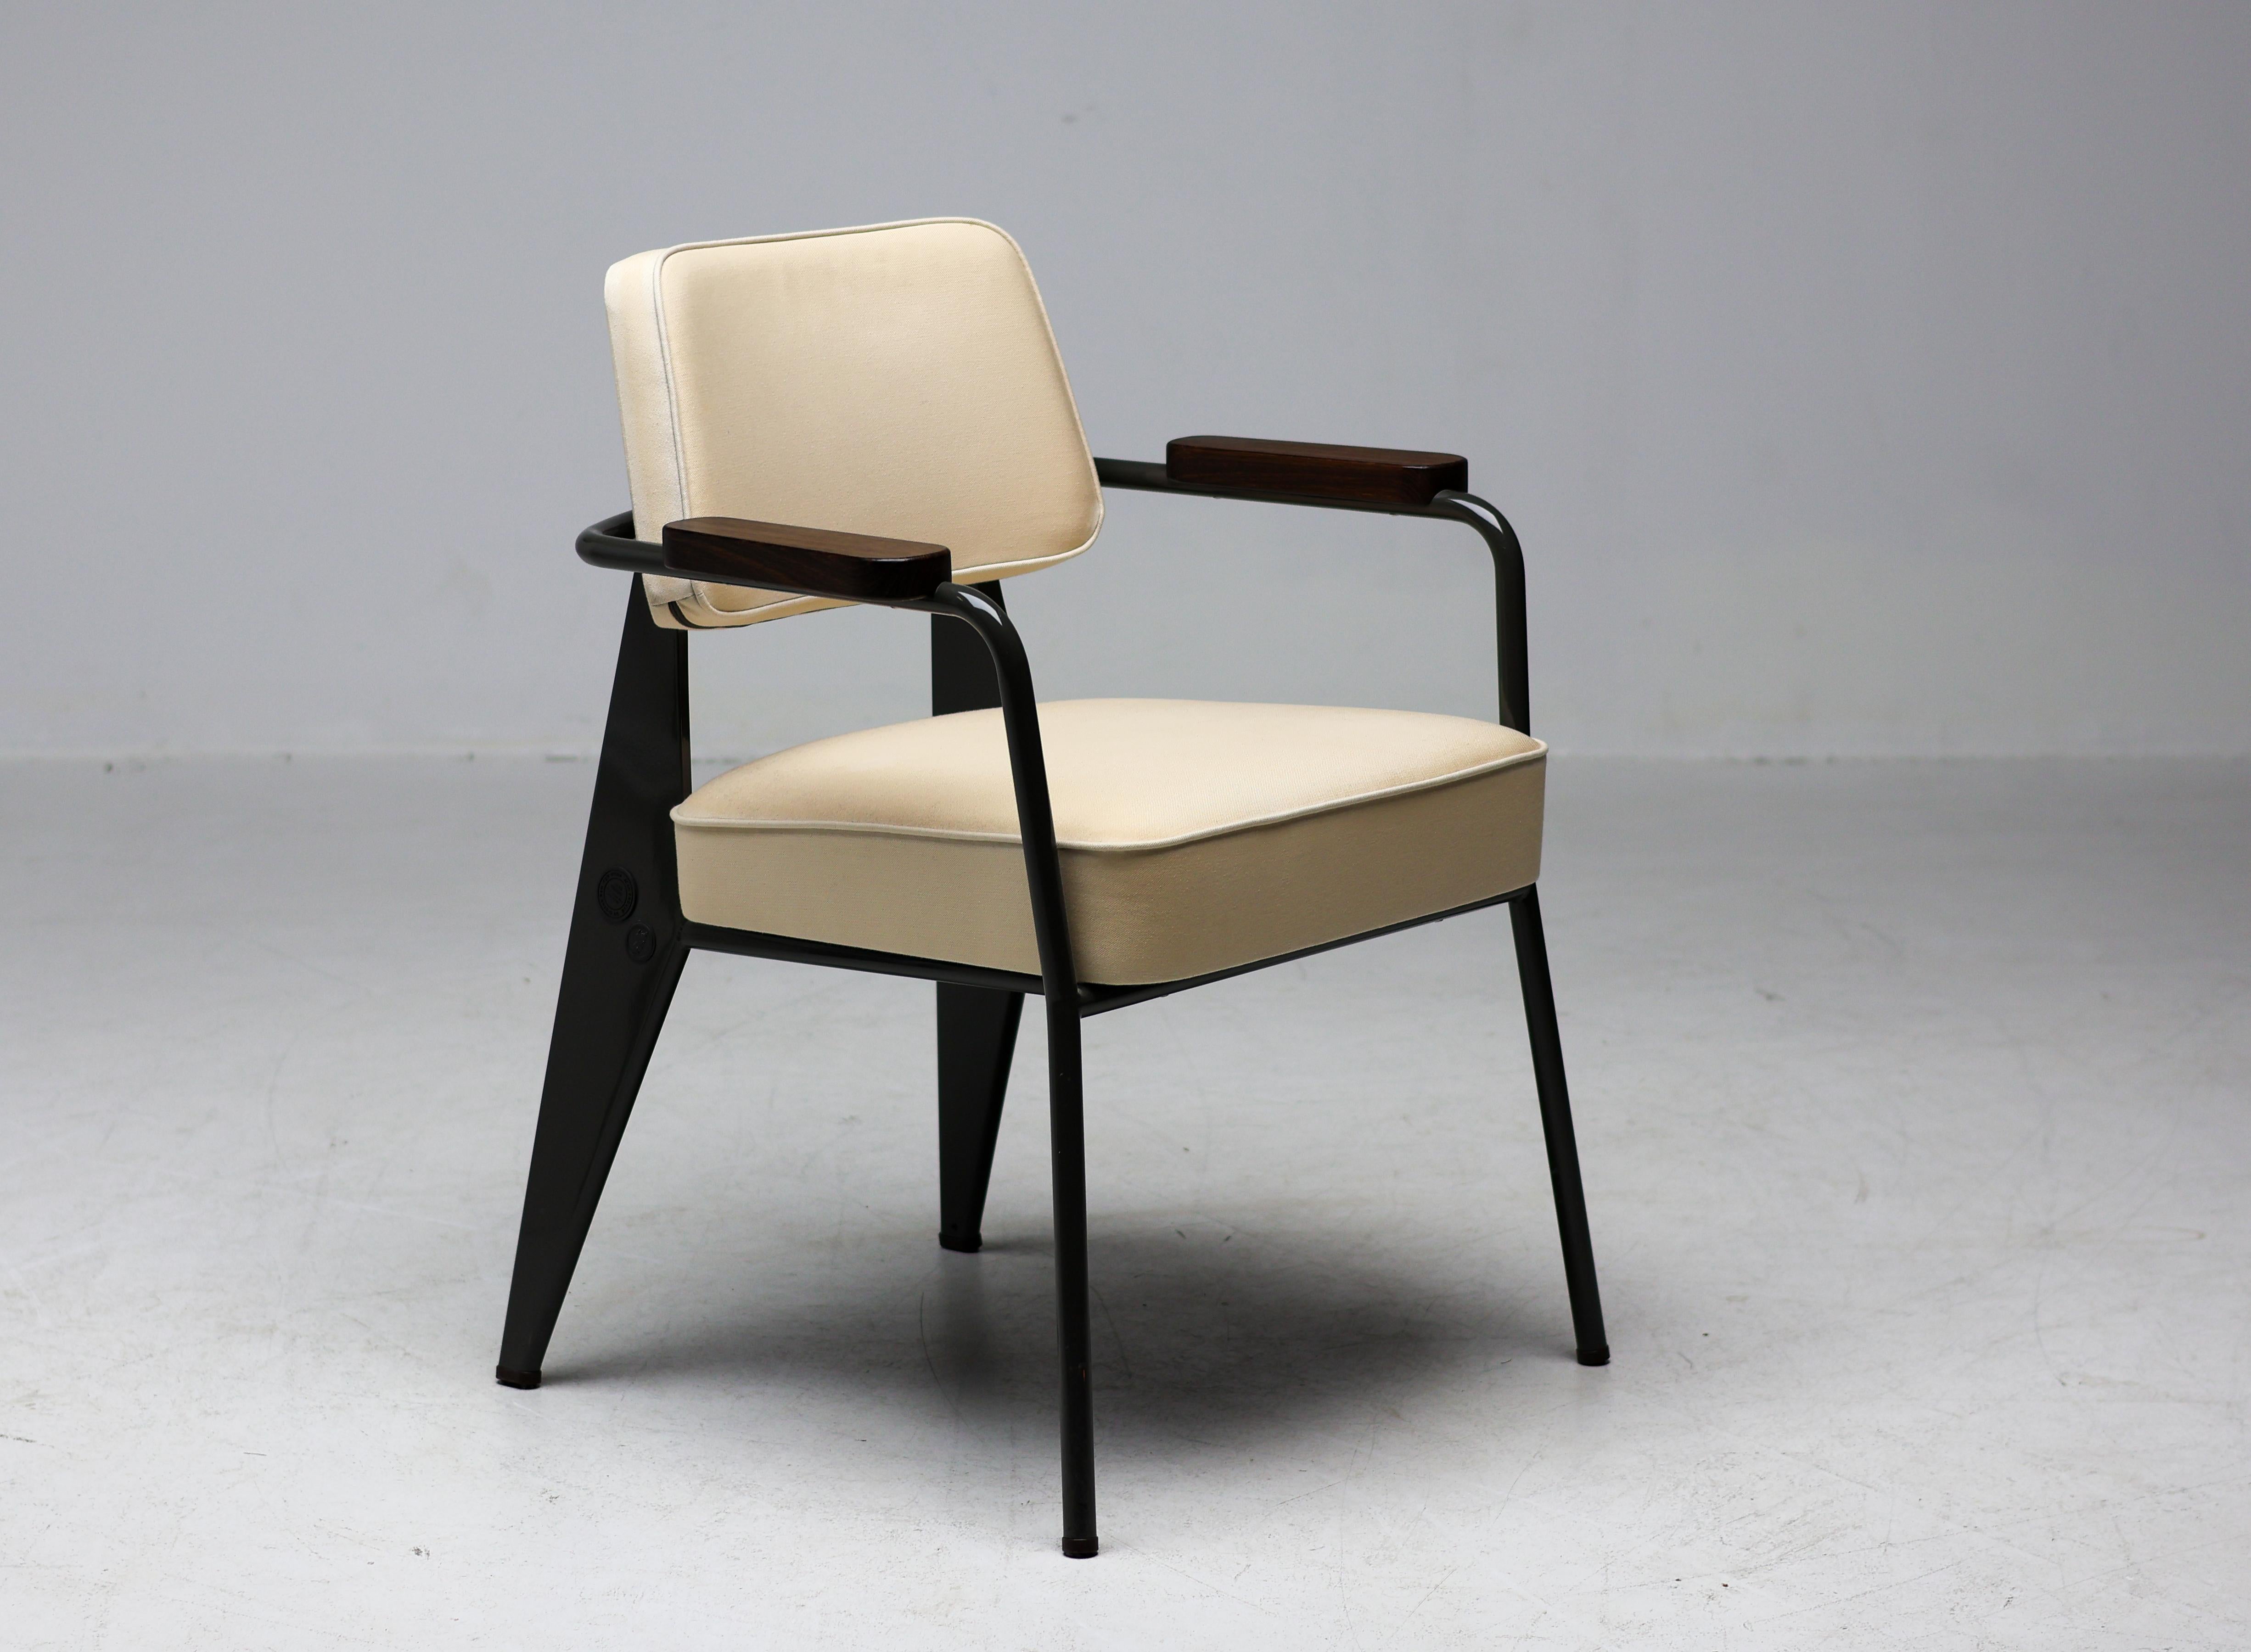 Limitierte Auflage des Fauteuil Direction, entworfen von Jean Prouvé und 2011 von Vitra in Zusammenarbeit mit G-Star hergestellt.  Dieser wunderbare Stuhl stammt aus der seltenen, limitierten Erstausgabe mit der niedrigen Produktionsnummer 167.
Mit